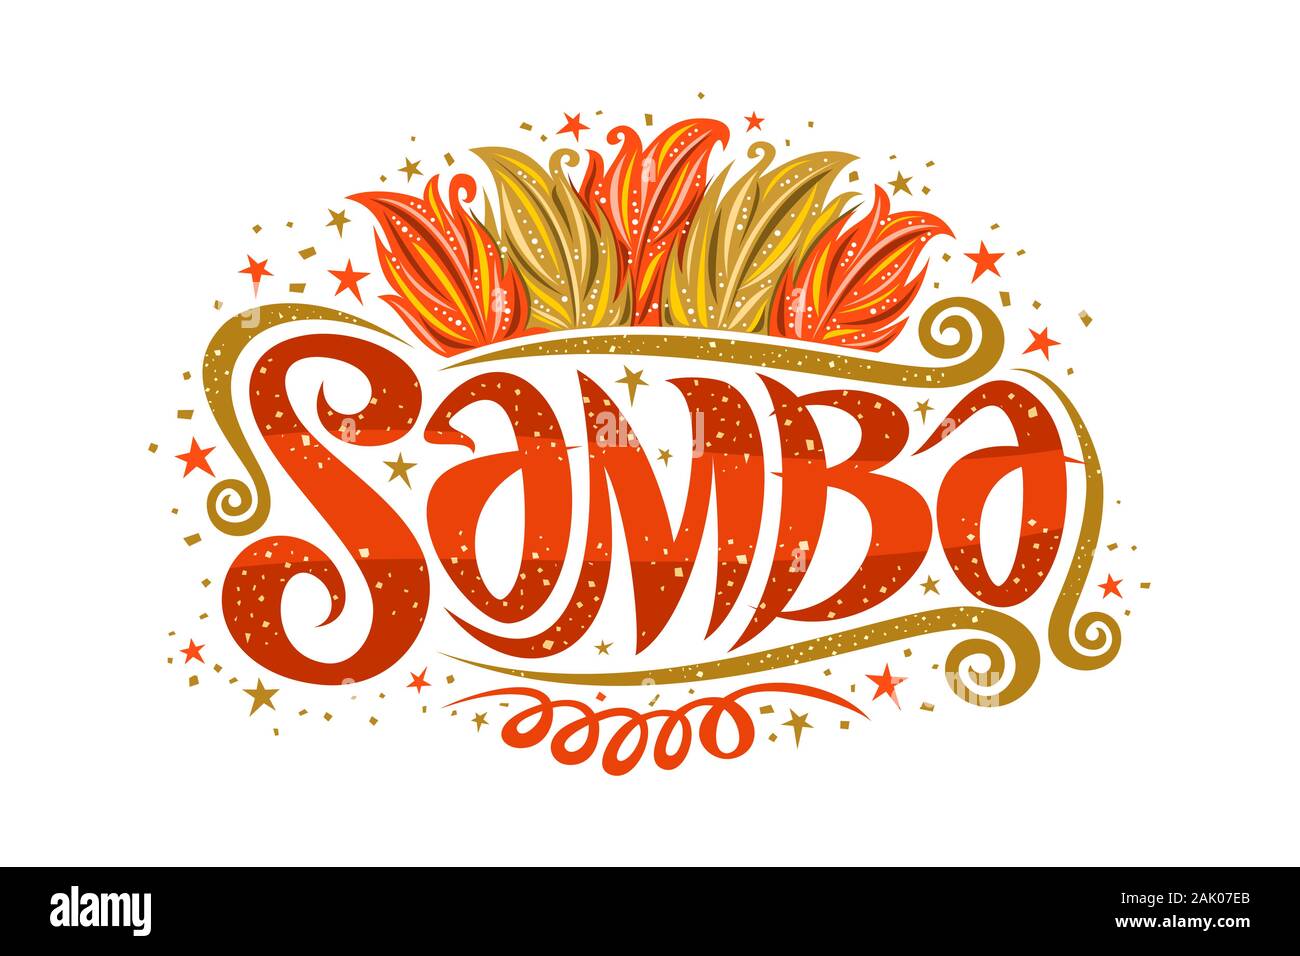 Logo Vector pour Samba brésilienne, decorative sign board pour l'école de samba avec illustration de l'orange et le jaune les plumes des oiseaux, des étoiles et des vagues, de l'origine Illustration de Vecteur